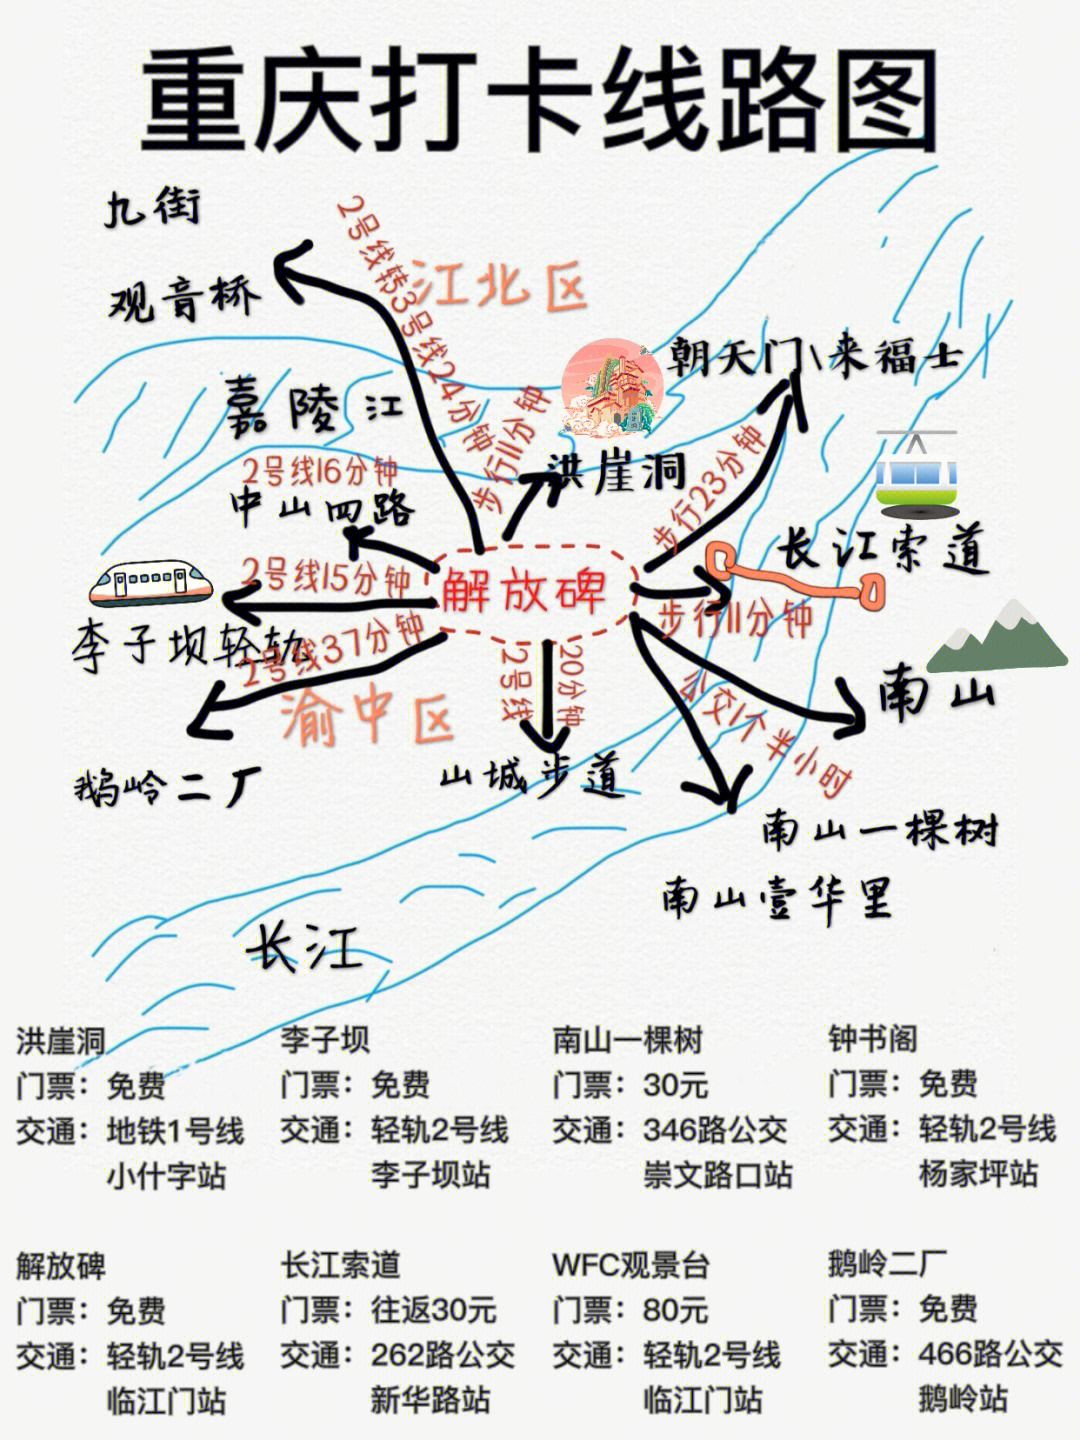 重庆旅行  网红景点  重庆线路   重庆美食  重庆特产这次给大家总结